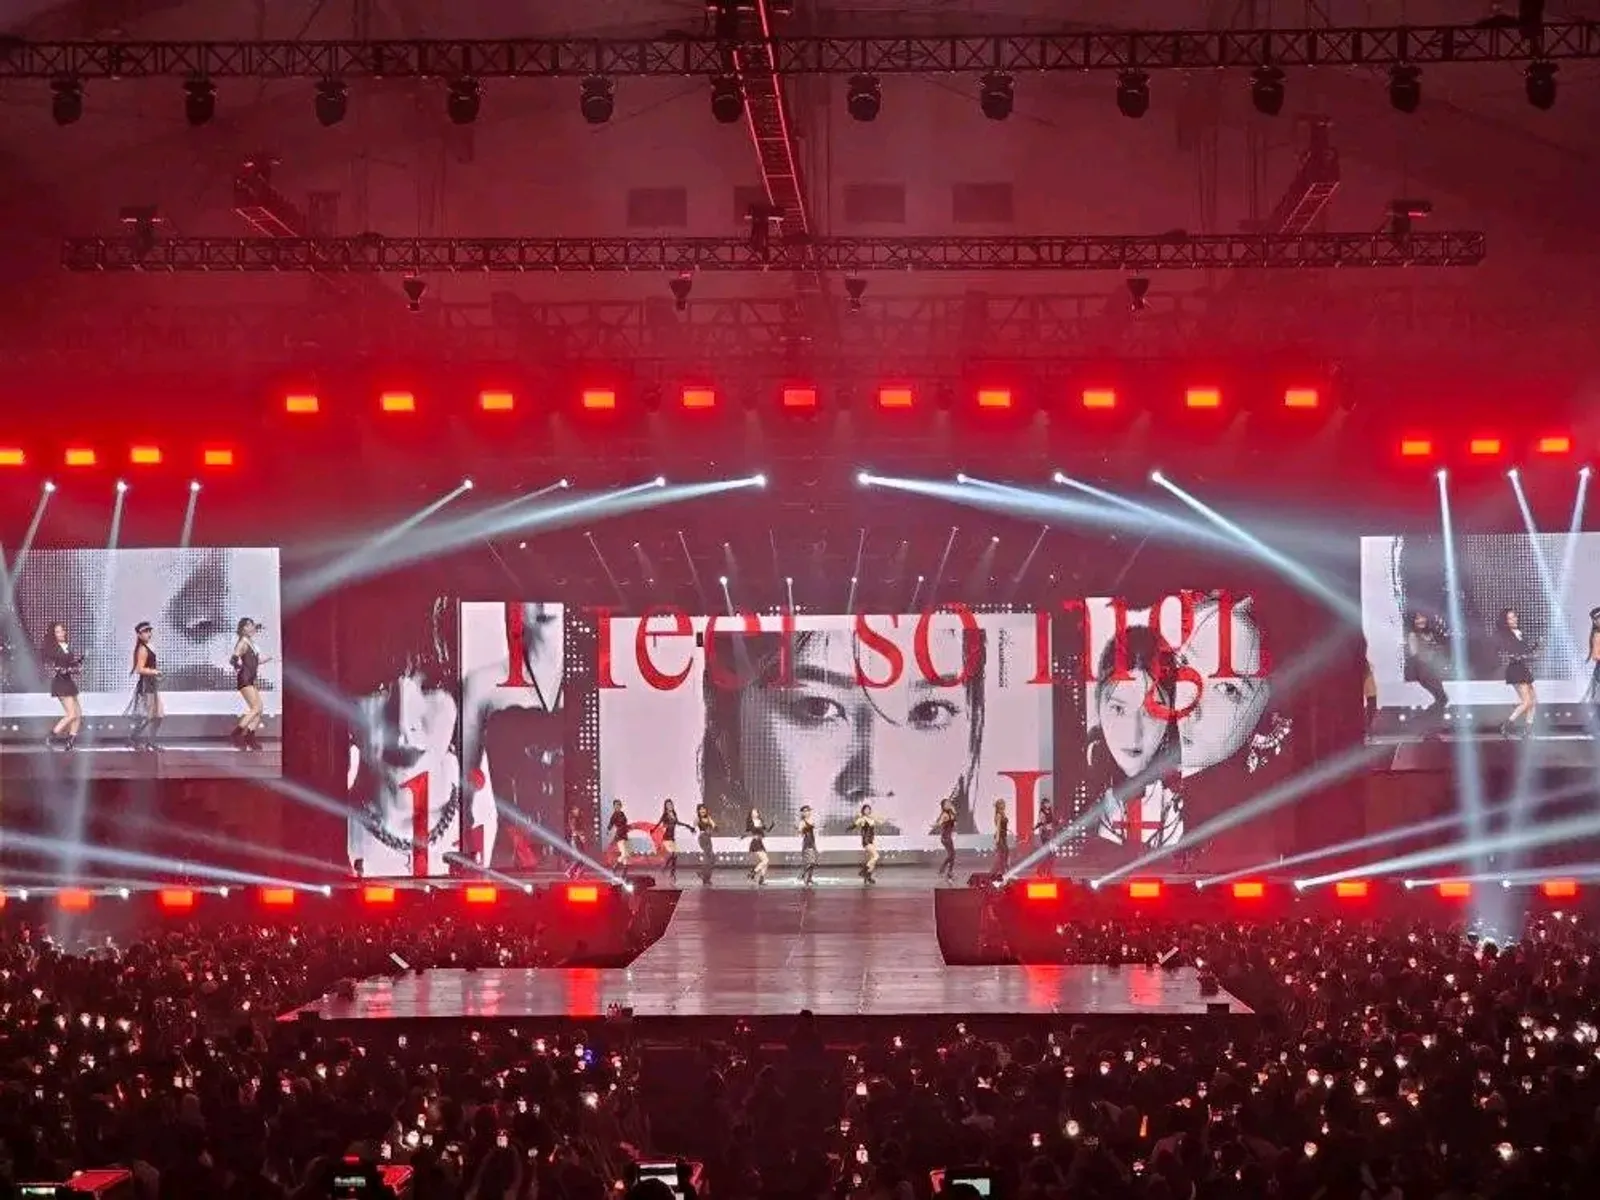 Red Velvet 'R to V': Bebaskan Dirimu dari Insecure yang Membelenggu